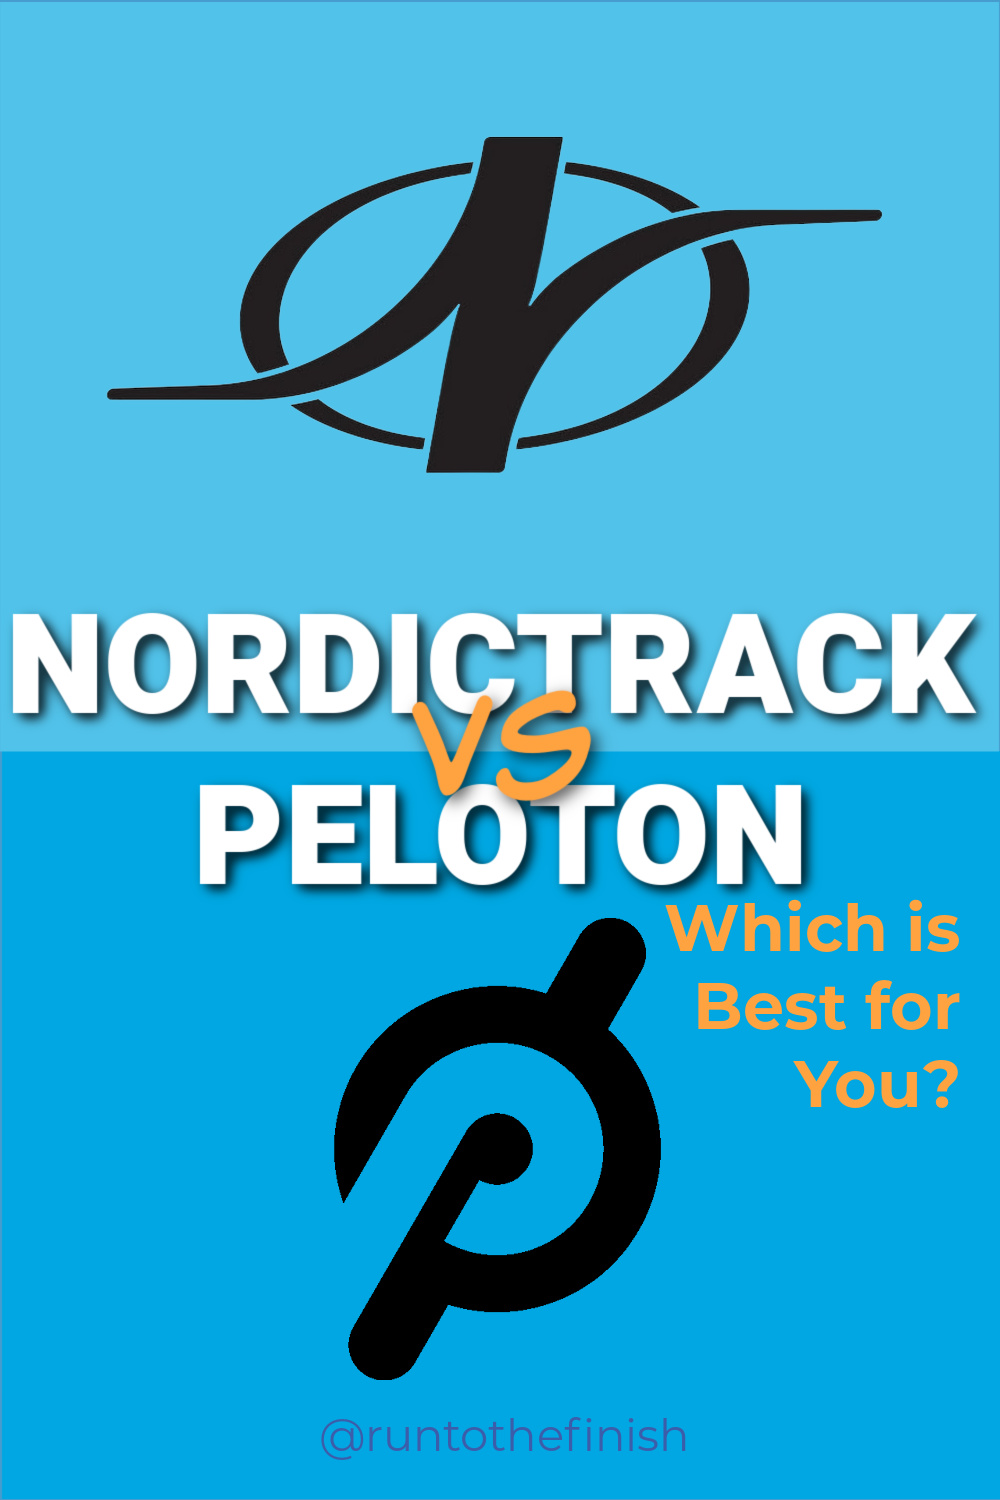 NordicTrack v Peloton Treadmills